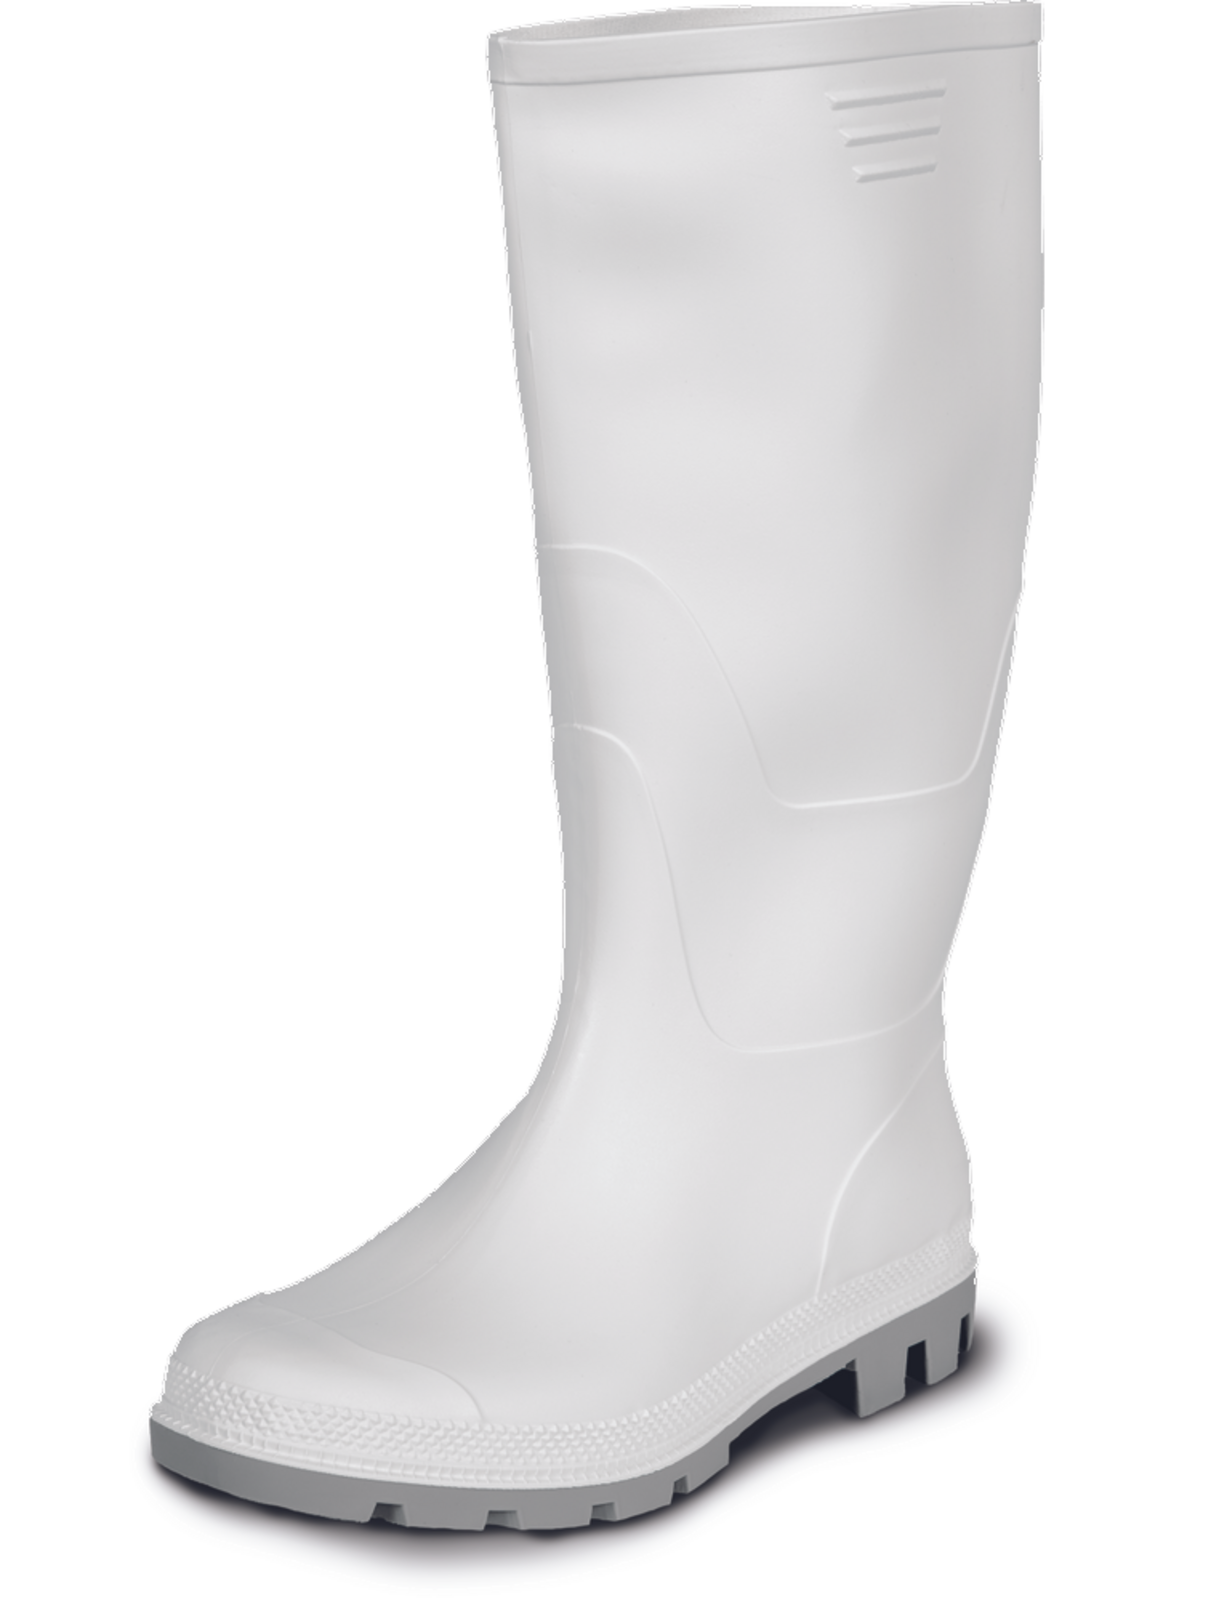 Gumáky Boots Ginocchio PVC - veľkosť: 43, farba: biela